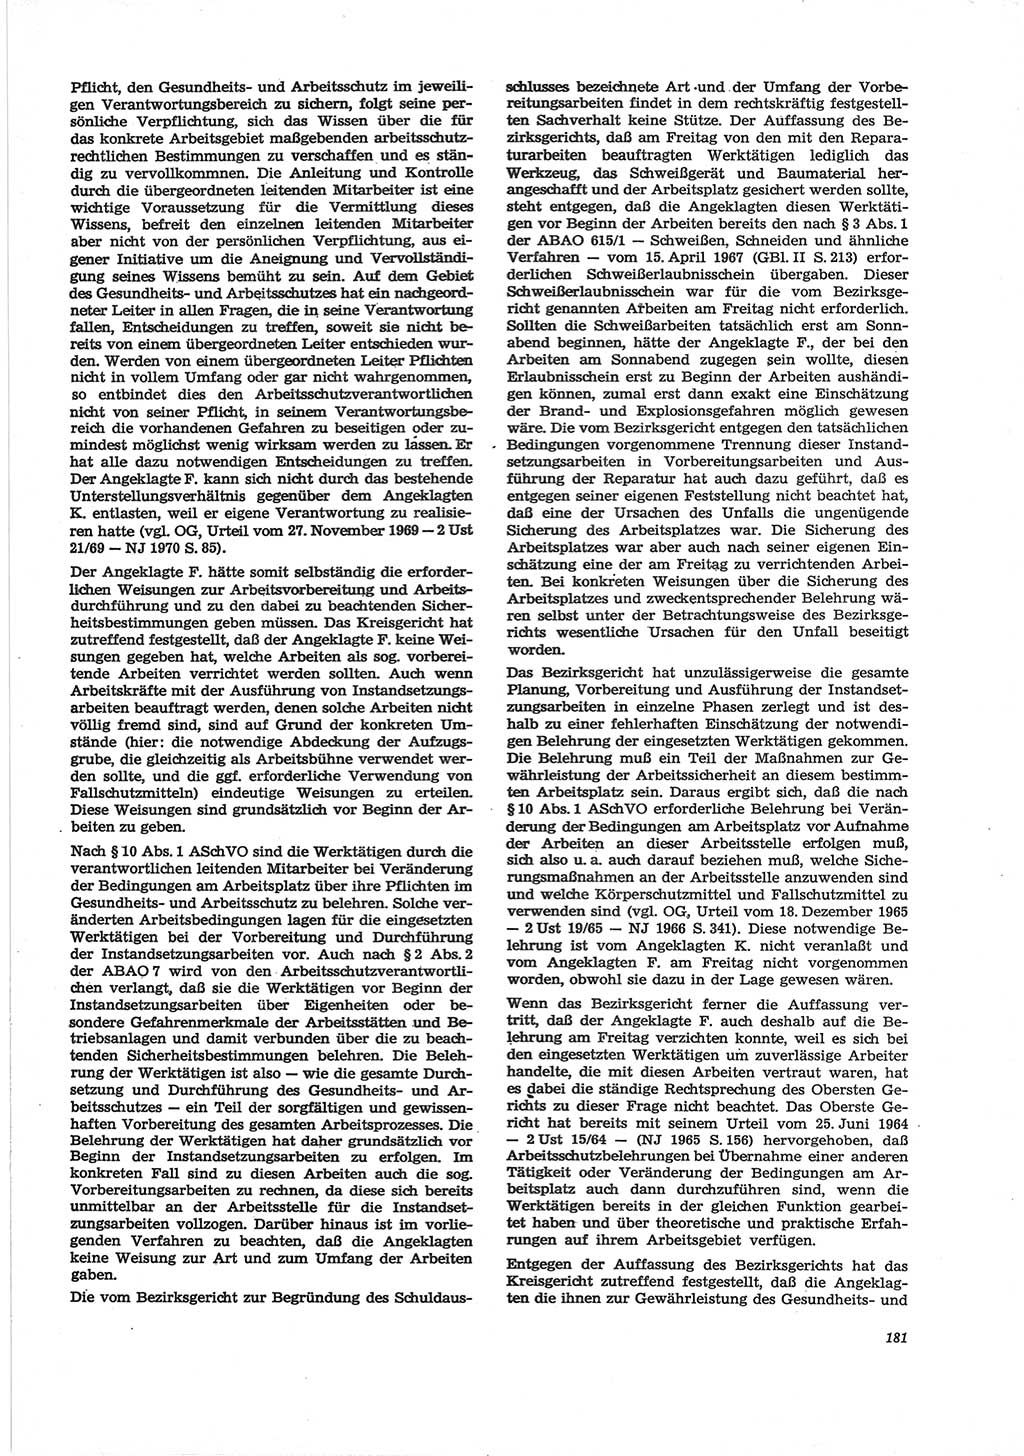 Neue Justiz (NJ), Zeitschrift für Recht und Rechtswissenschaft [Deutsche Demokratische Republik (DDR)], 28. Jahrgang 1974, Seite 181 (NJ DDR 1974, S. 181)